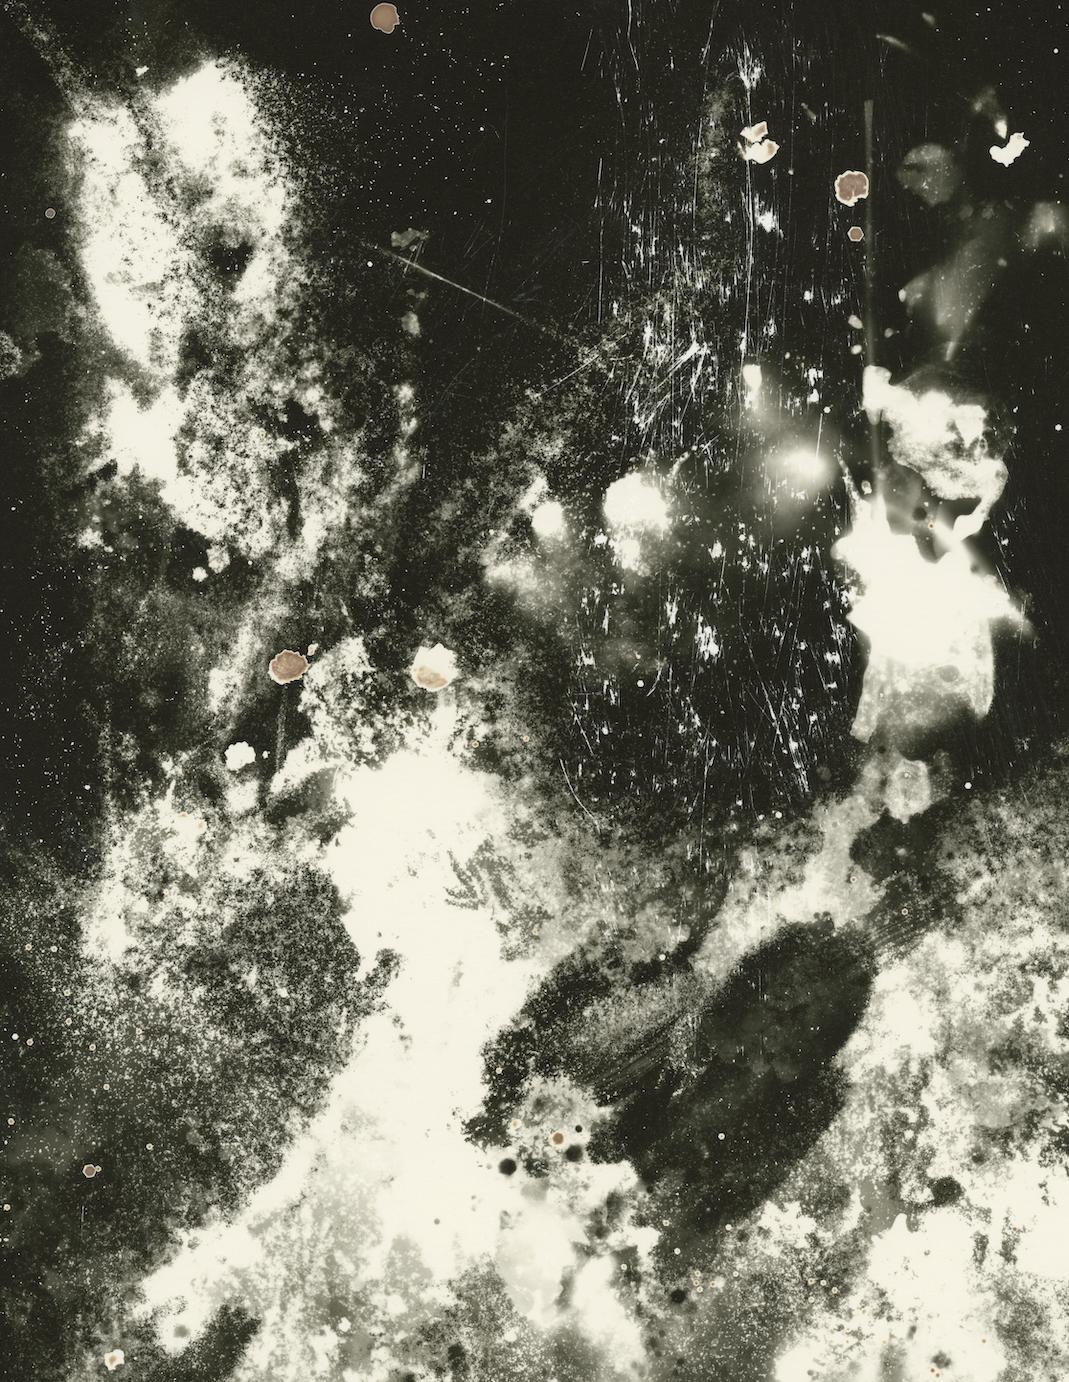 Rocket - zeitgenössische abstrakte schwarz-weiße Luftaufnahme ohne Kamera (Abstrakt), Photograph, von Kimberly Schneider Photography